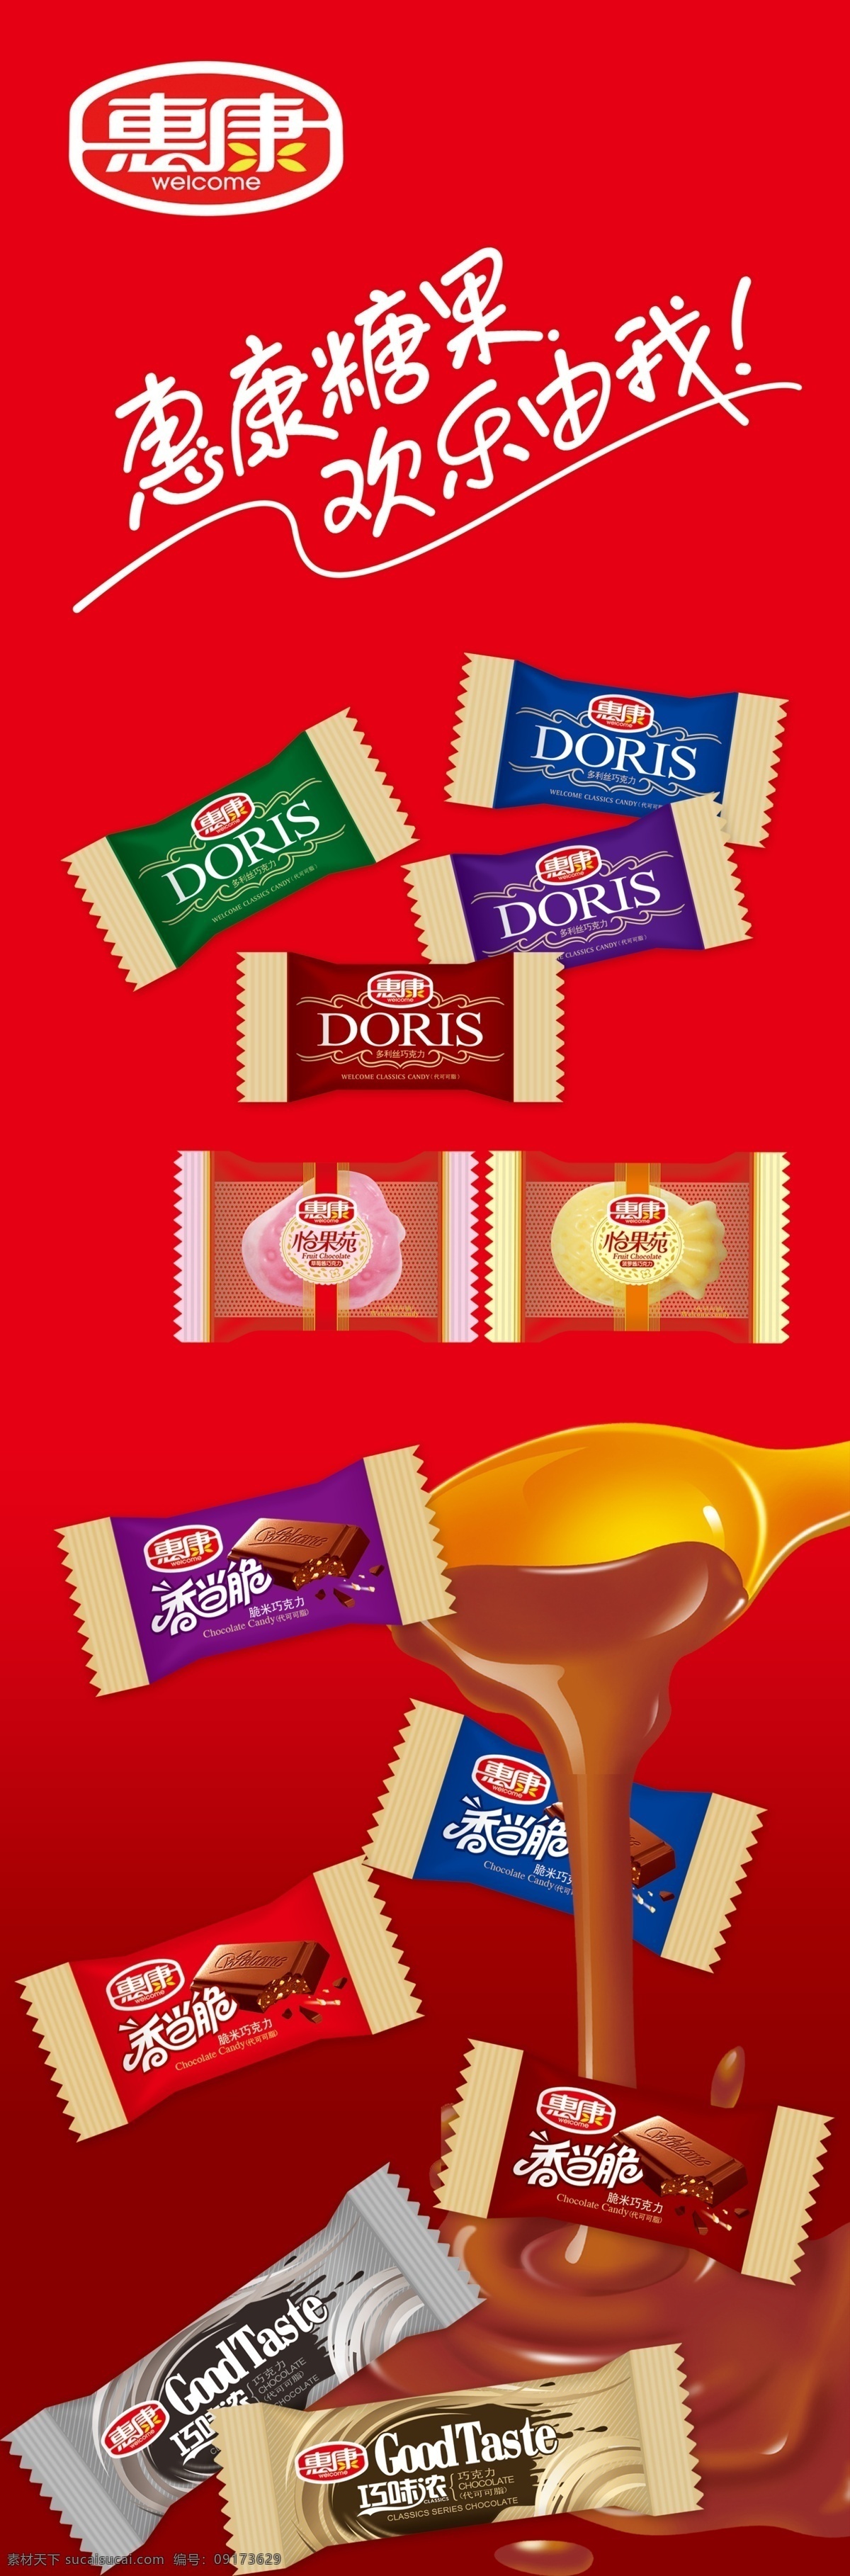 惠康 巧克力 奶糖 竹炭坊 其他模版 广告设计模板 源文件